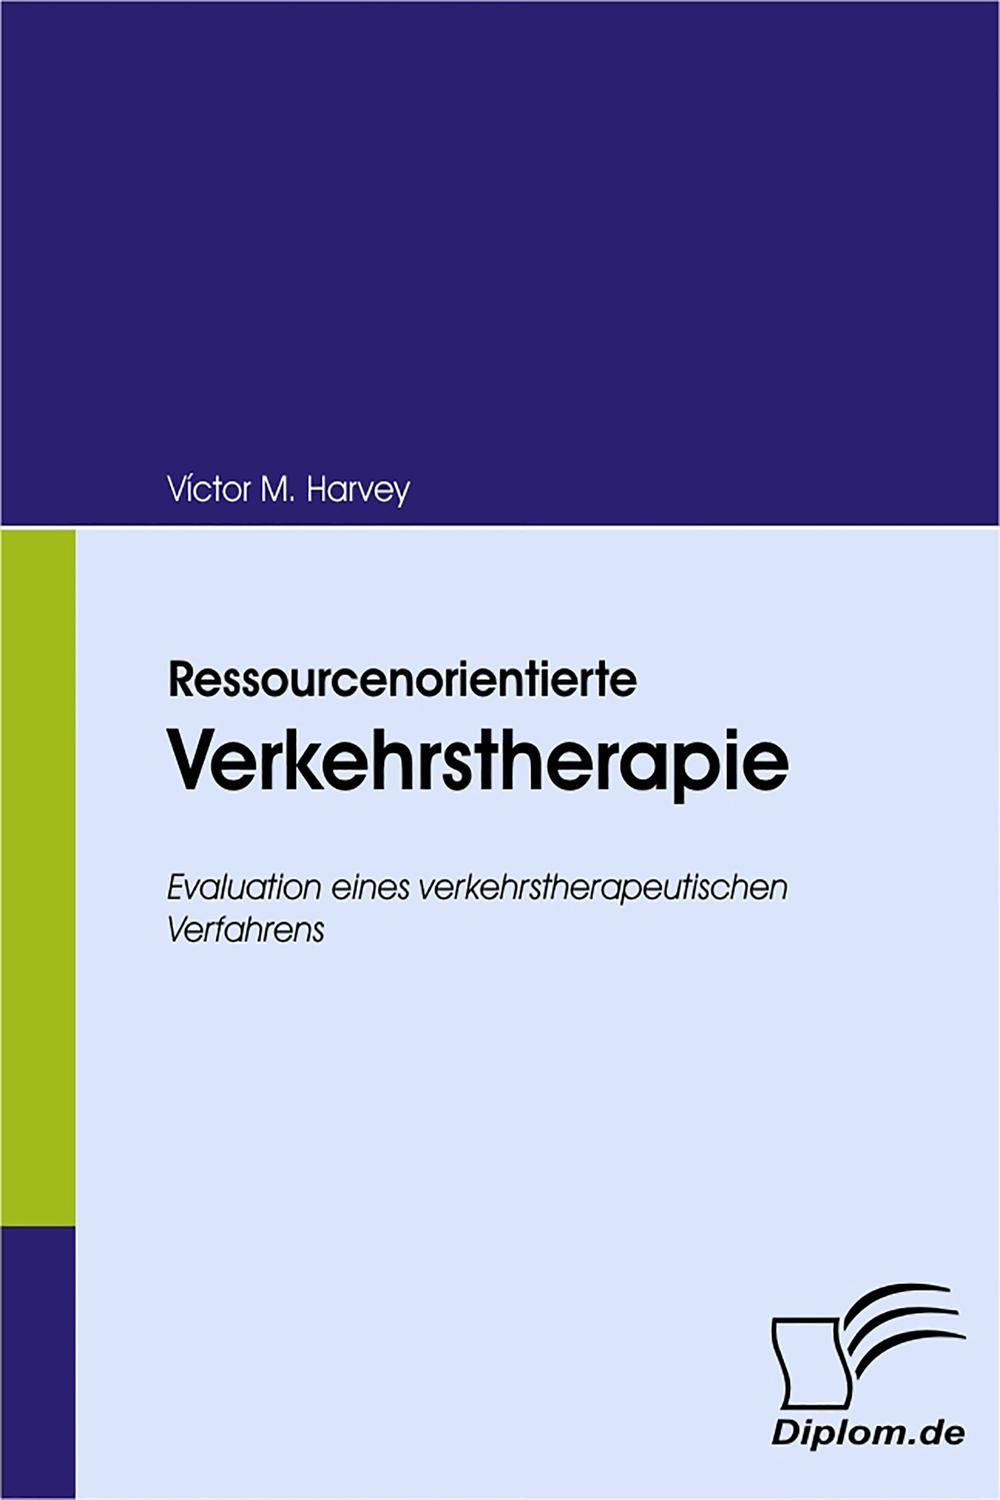 Ressourcenorientierte Verkehrstherapie - Victor M. Harvey